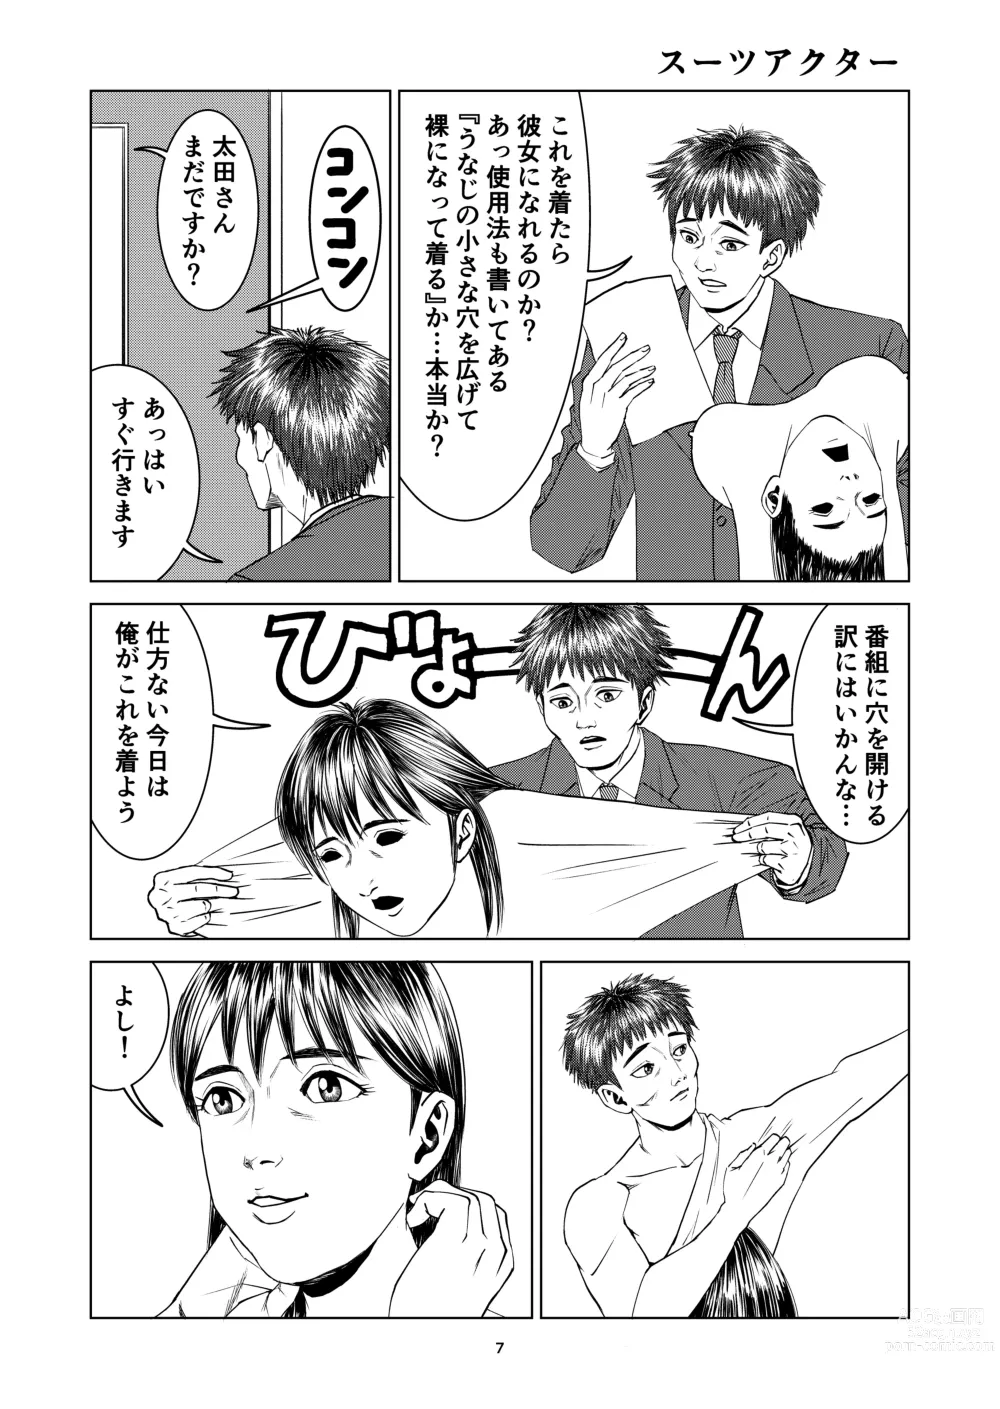 Page 7 of doujinshi Yutakadou short story collection 2